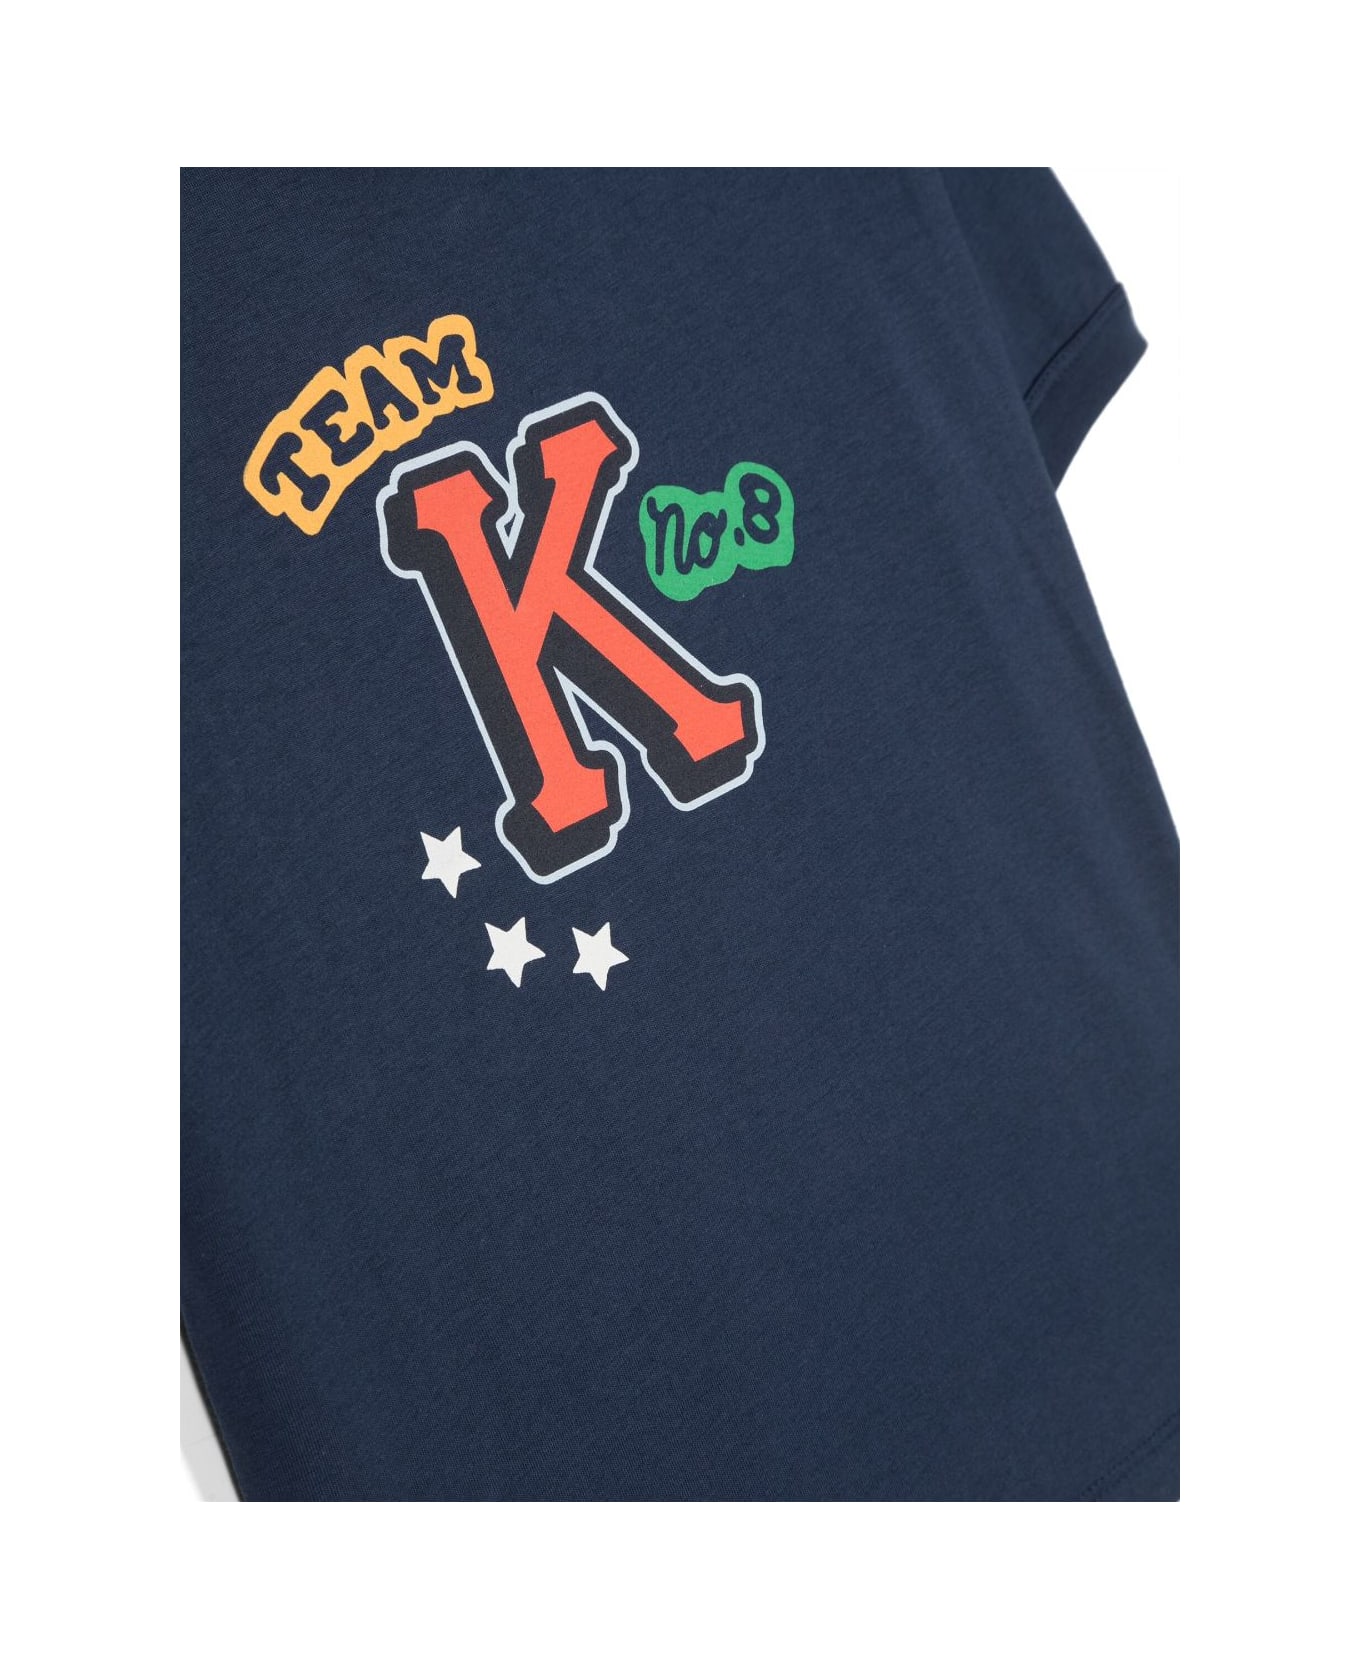 Kenzo Kids Kenzo T-shirt Blu In Jersey Di Cotone Bambino - Blu